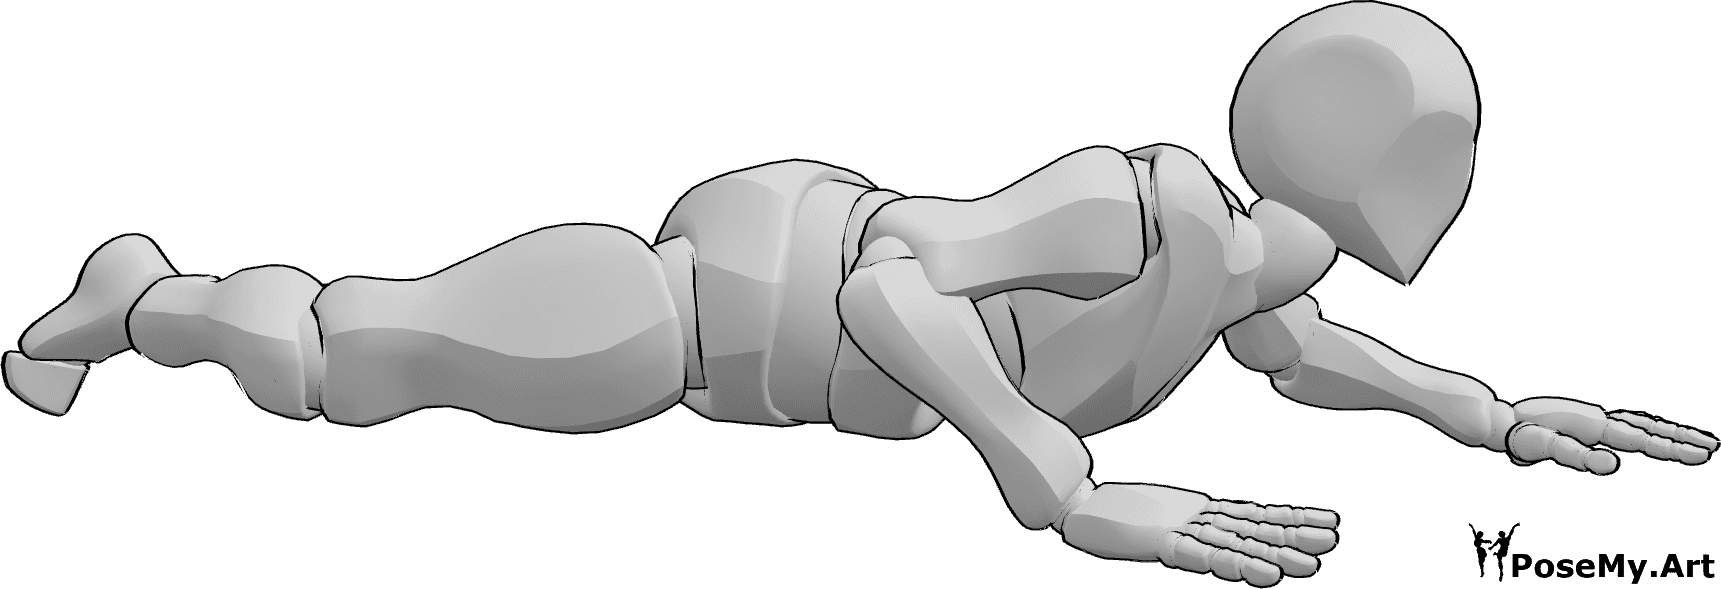 Référence des poses- Pose du ventre de l'homme rampant - Le mâle rampe sur le ventre, près du sol, en position de rampement.